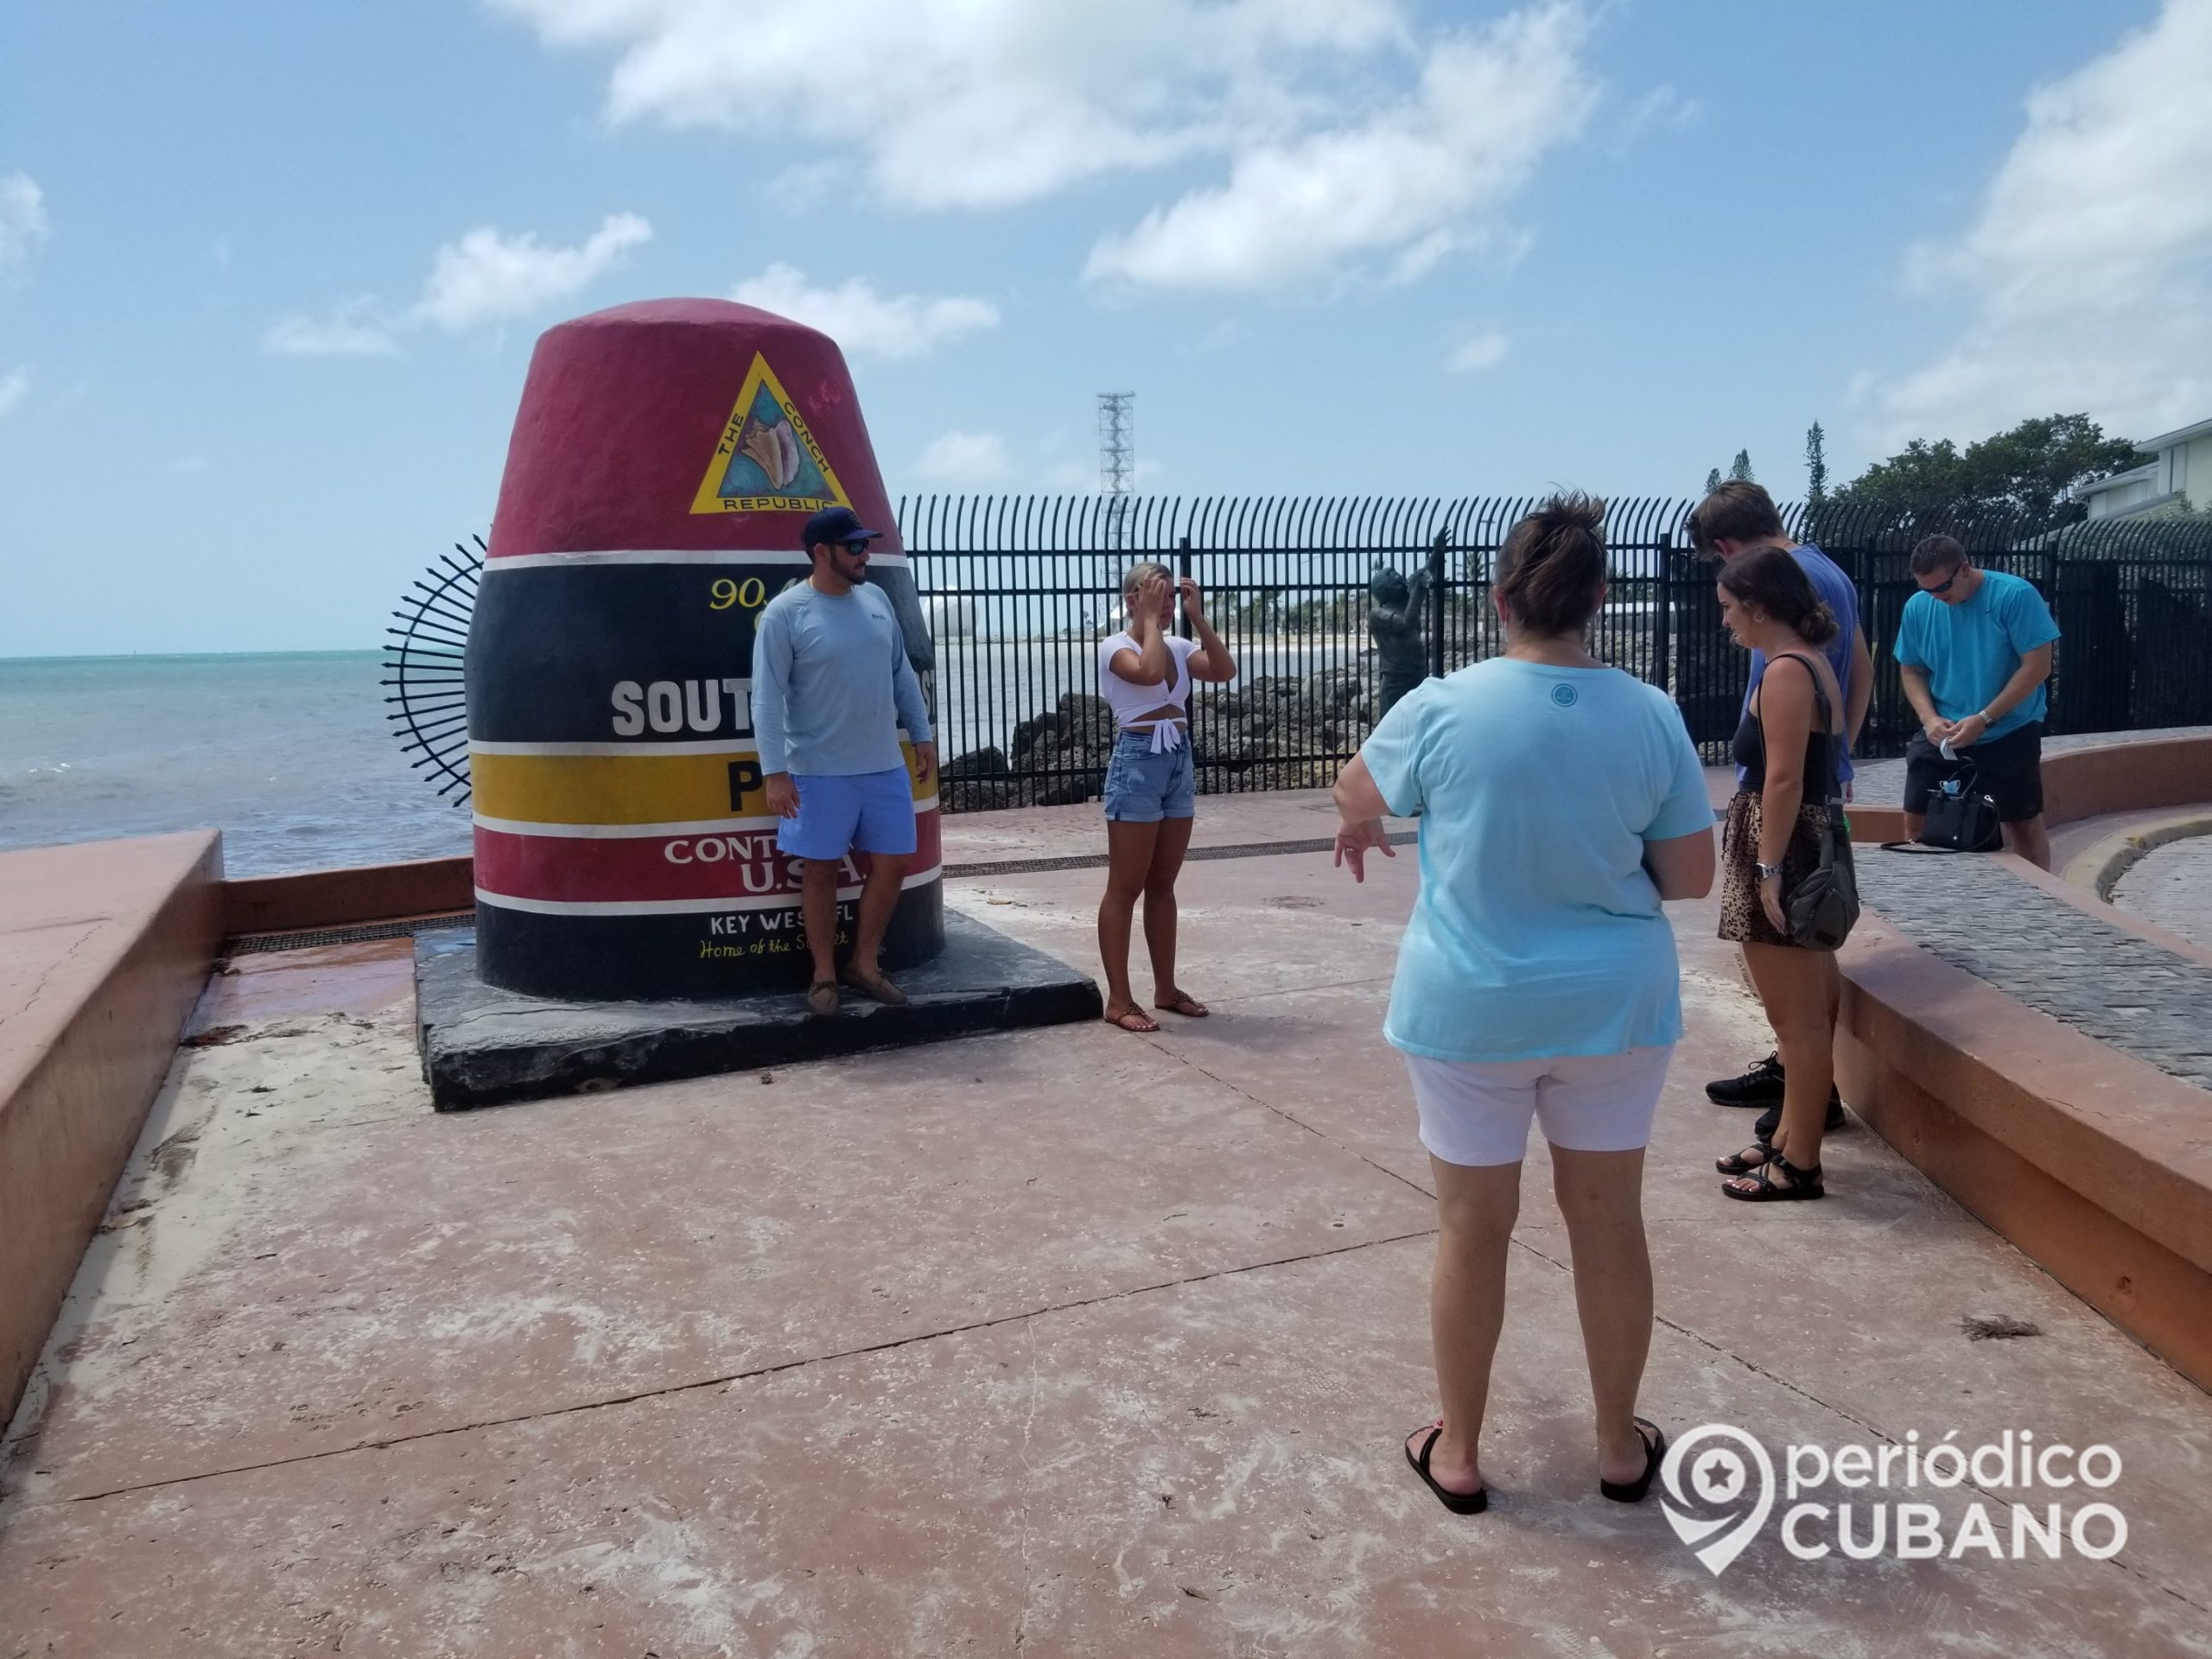 Un cantinero Ayudó a identificar a los jóvenes que vandalizaron la boya de las 90 millas a Cuba